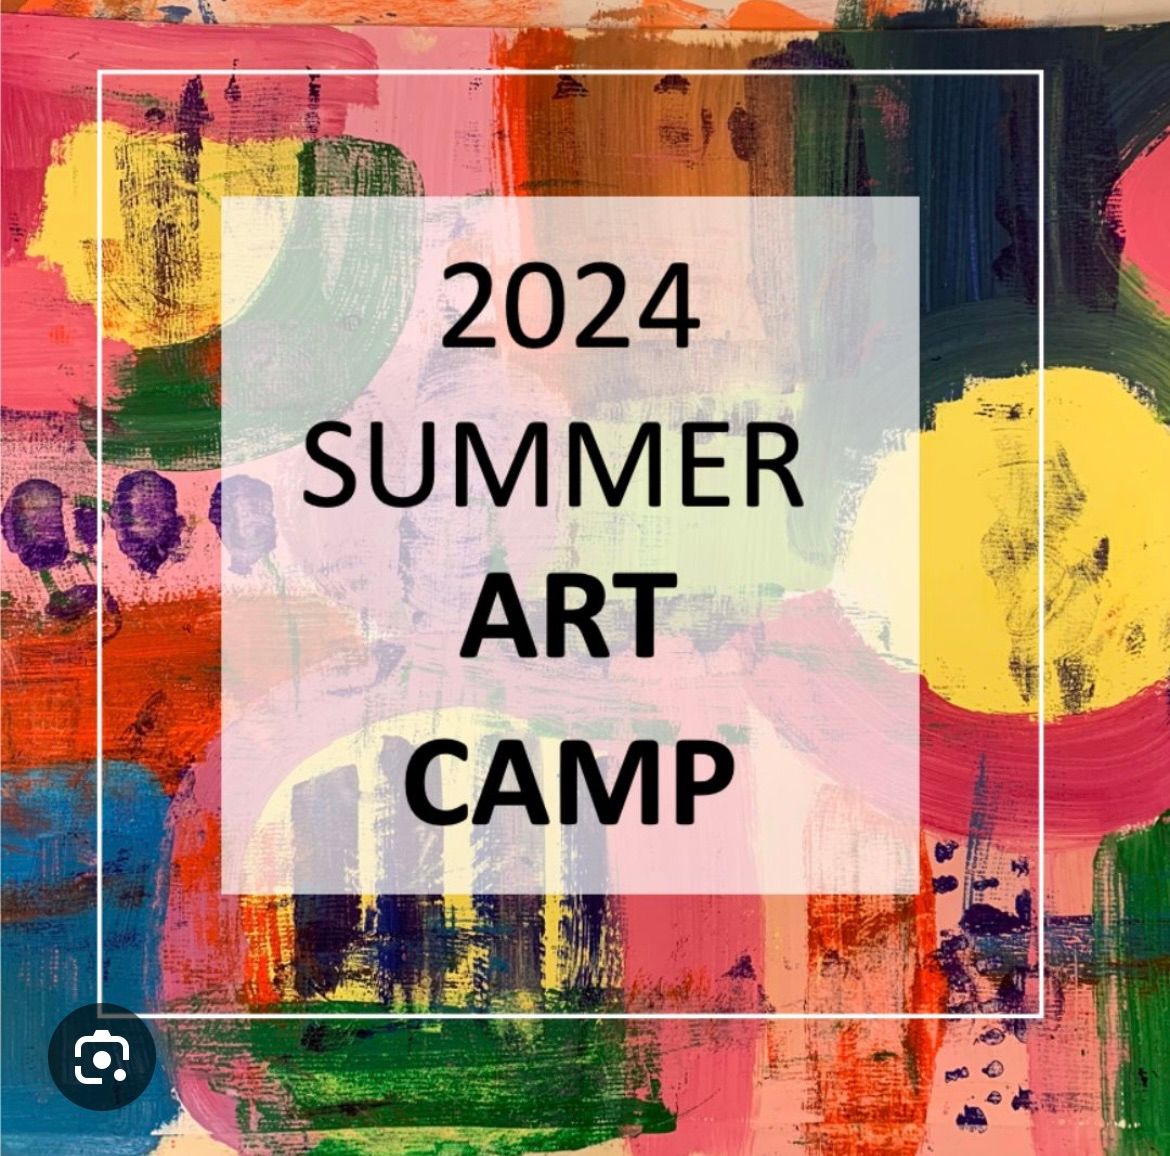 Summer art camp August (3 days) 